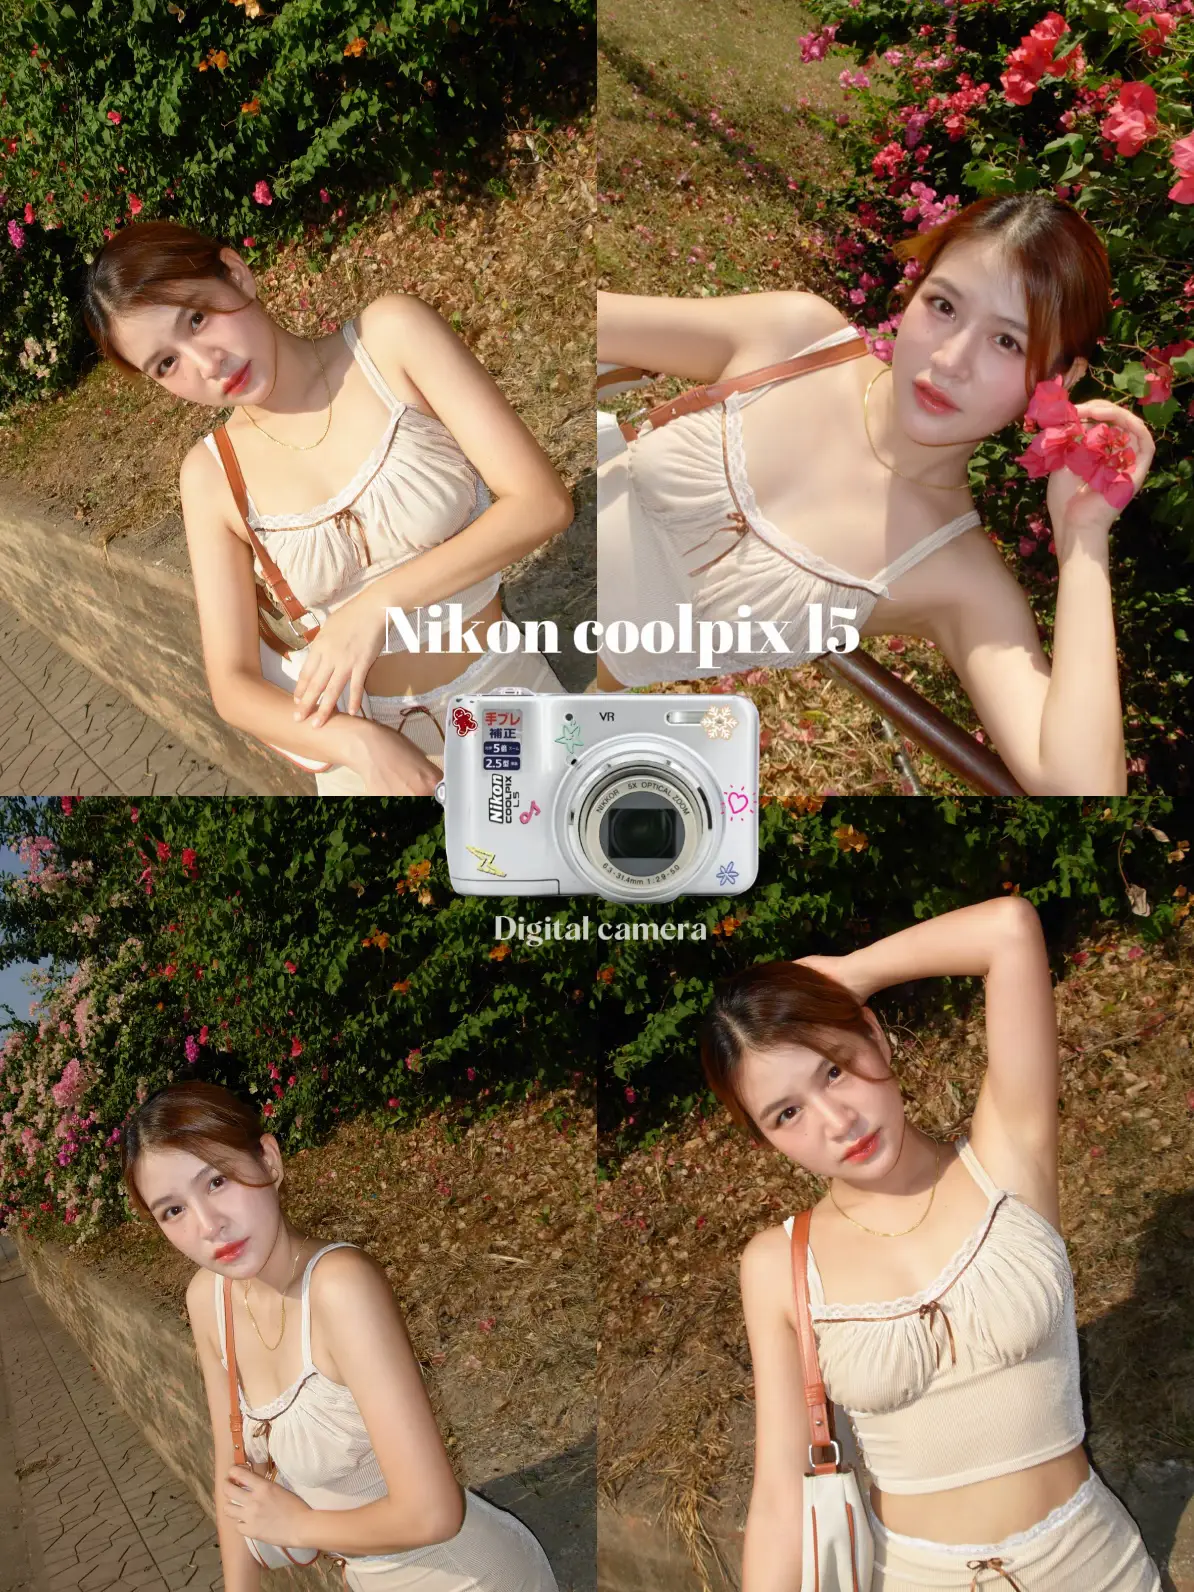 Nikon Coolpix P90 Review